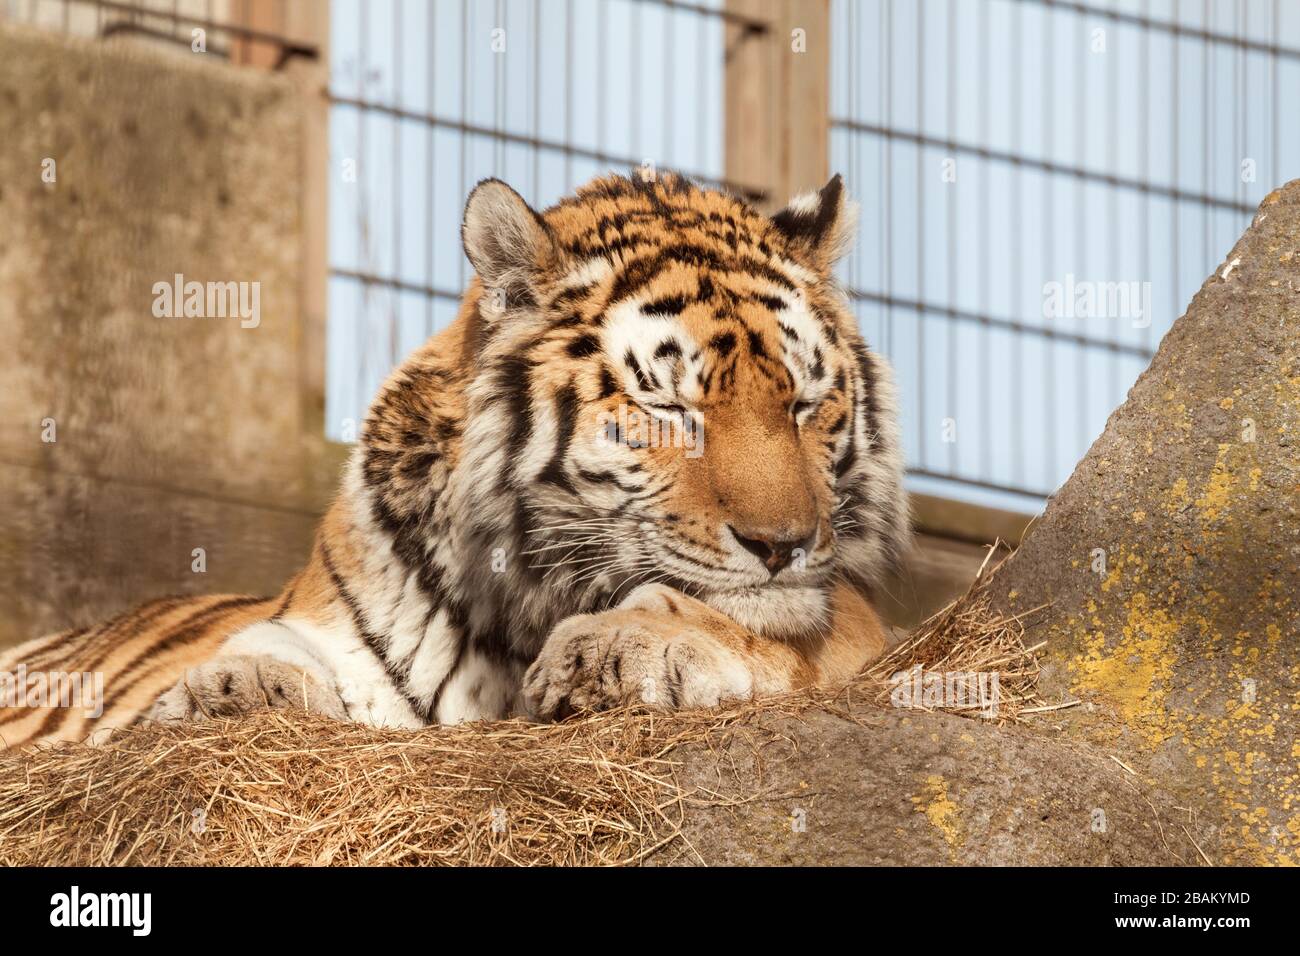 Tigre dormiente nell'avario del giardino zoologico. Tigre siberiana o amur allo zoo. Foto Stock